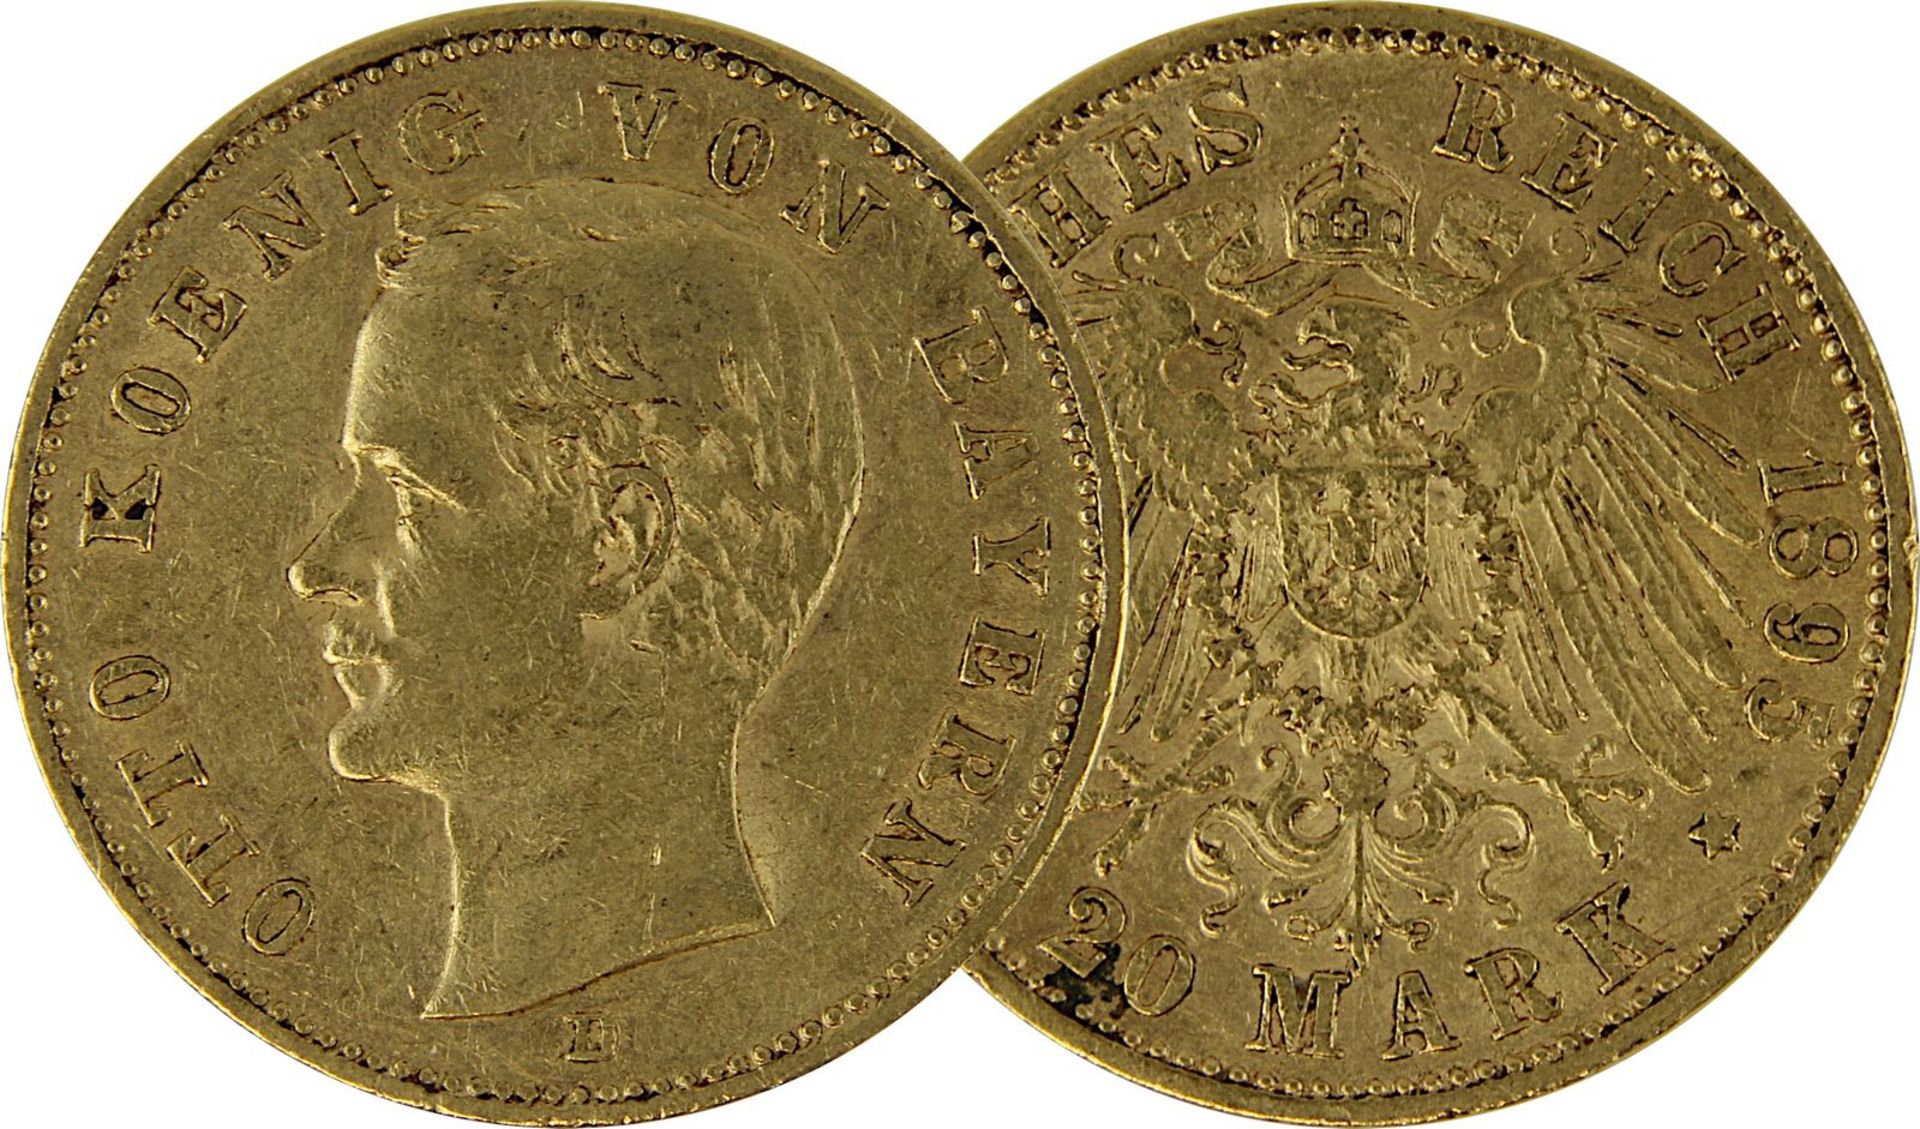 Goldmünze zu 20 Mark, Bayern - Deutsches Reich 1895, Avers: Kopf Otto König von Bayern nach links u.